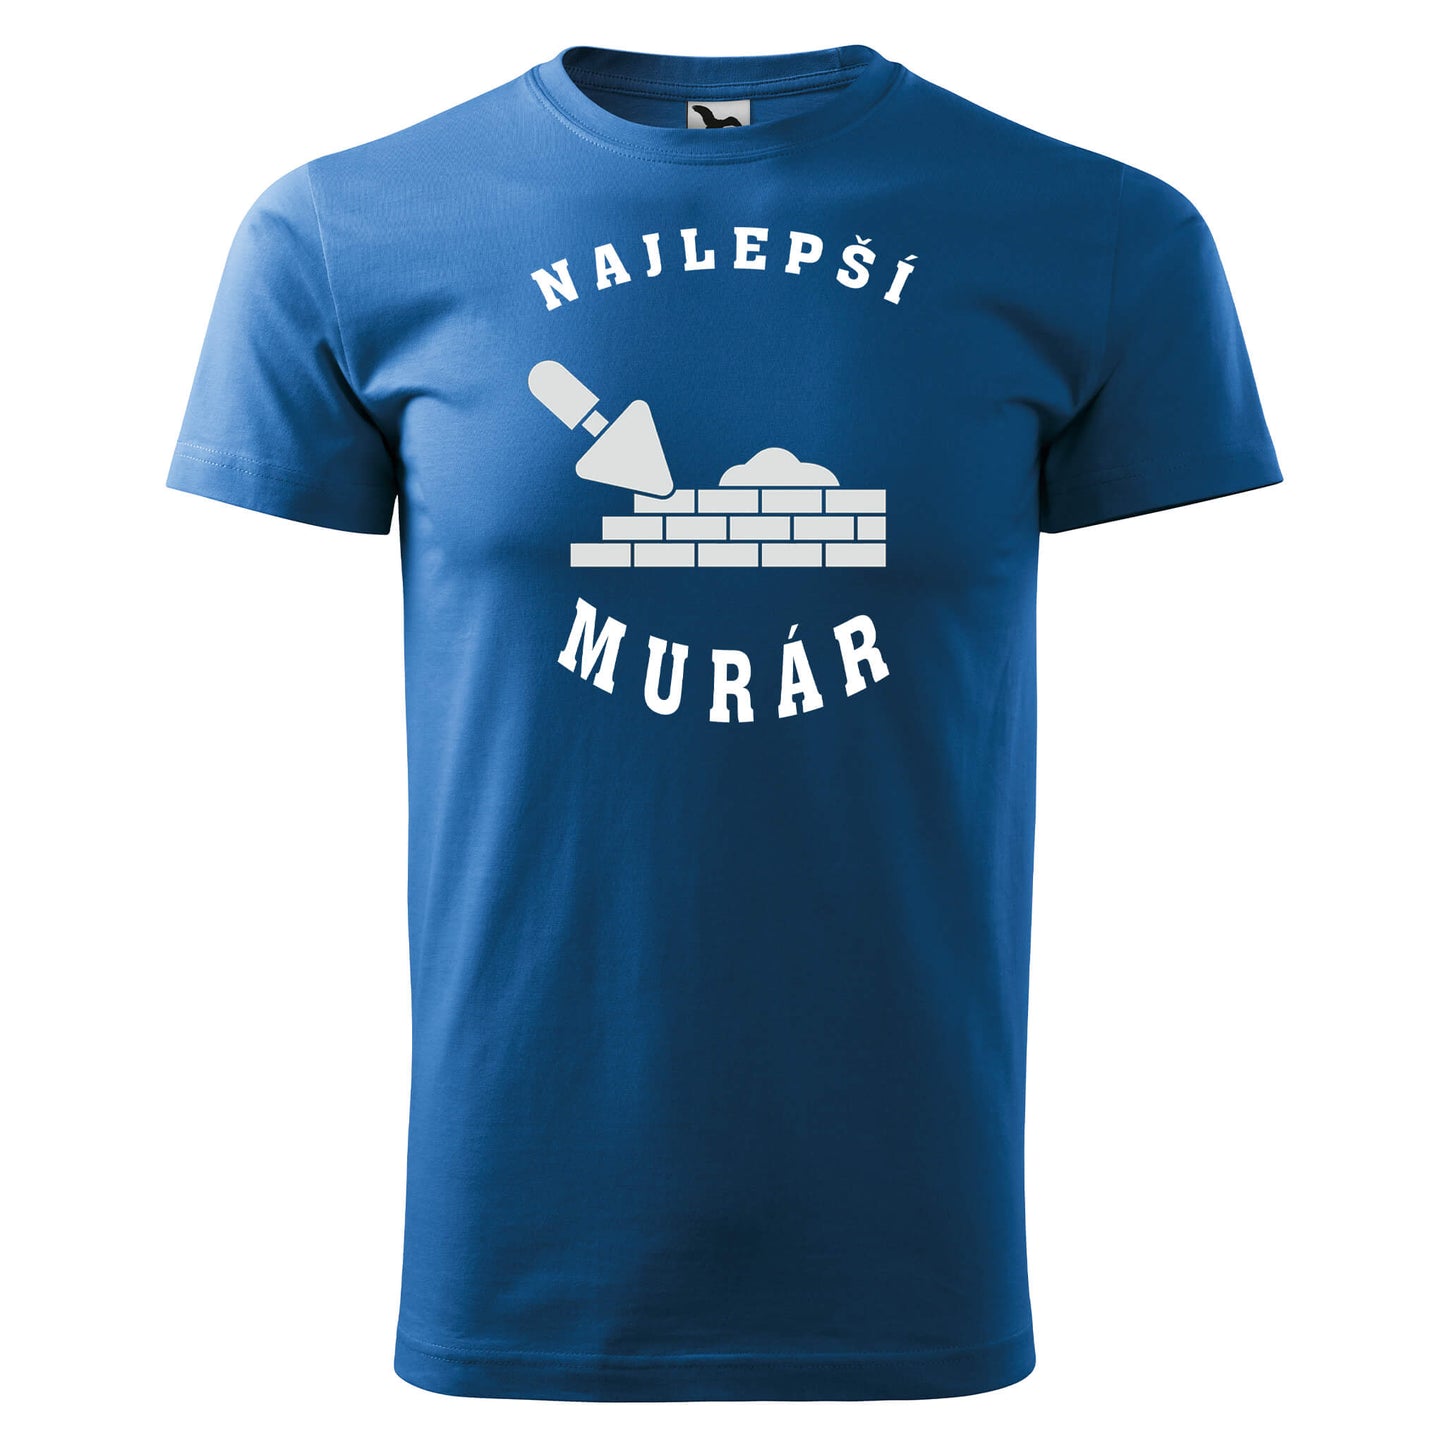 T-shirt - Najlepší murár - rvdesignprint